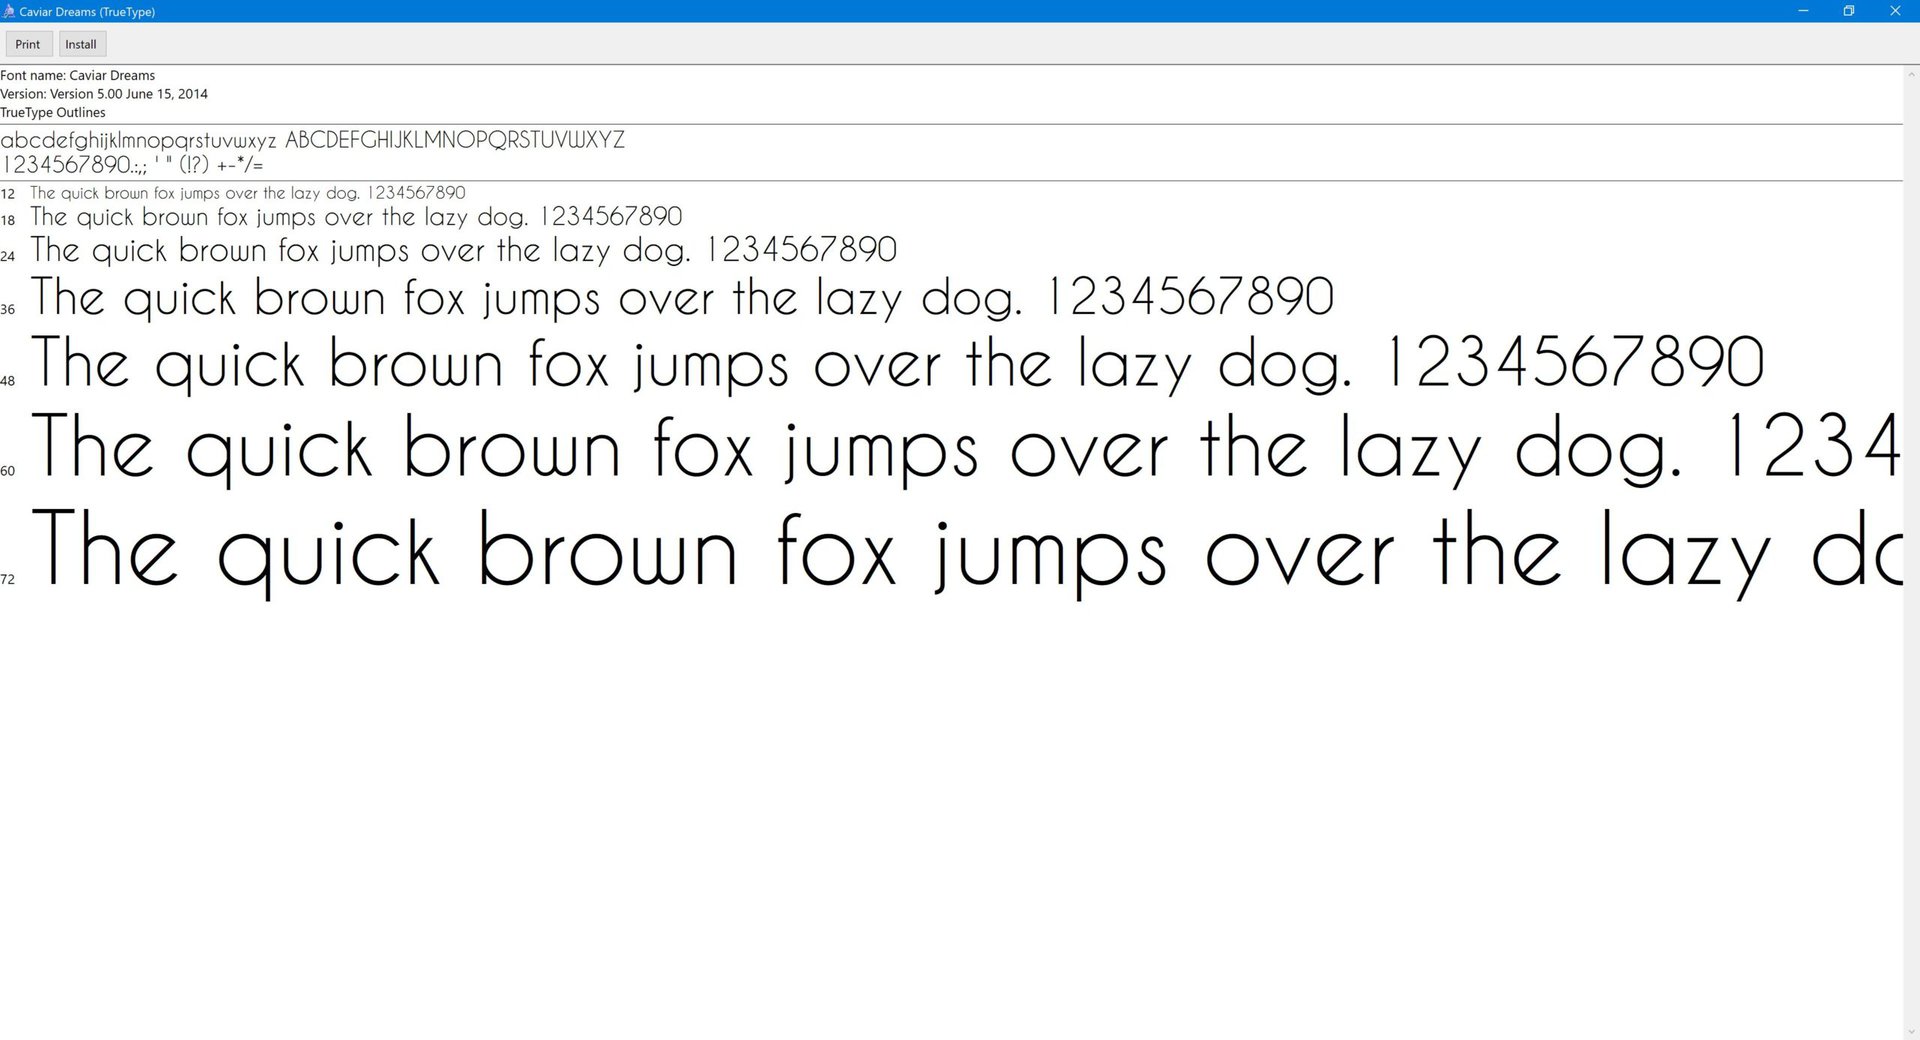 A screenshot of the Windows font vieiwer shoing the Install button.